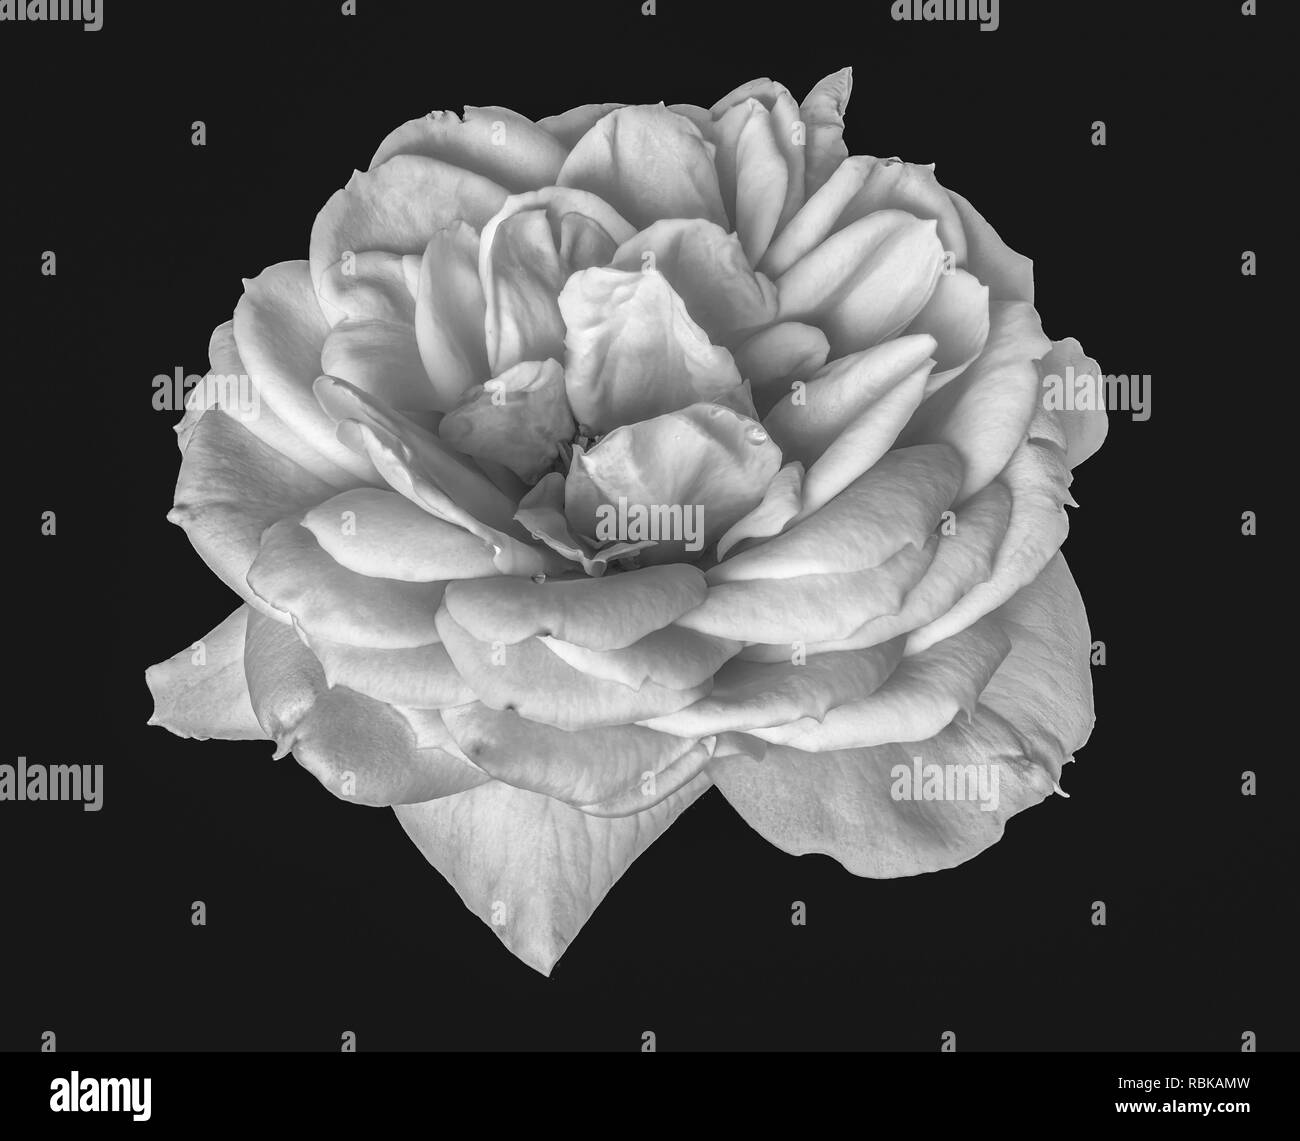 Monochrome noir et blanc fine art floral fleur macro vie toujours libre d'une seule fleur rose isolé avec de l'eau de pluie goutte texture détaillée amd Banque D'Images